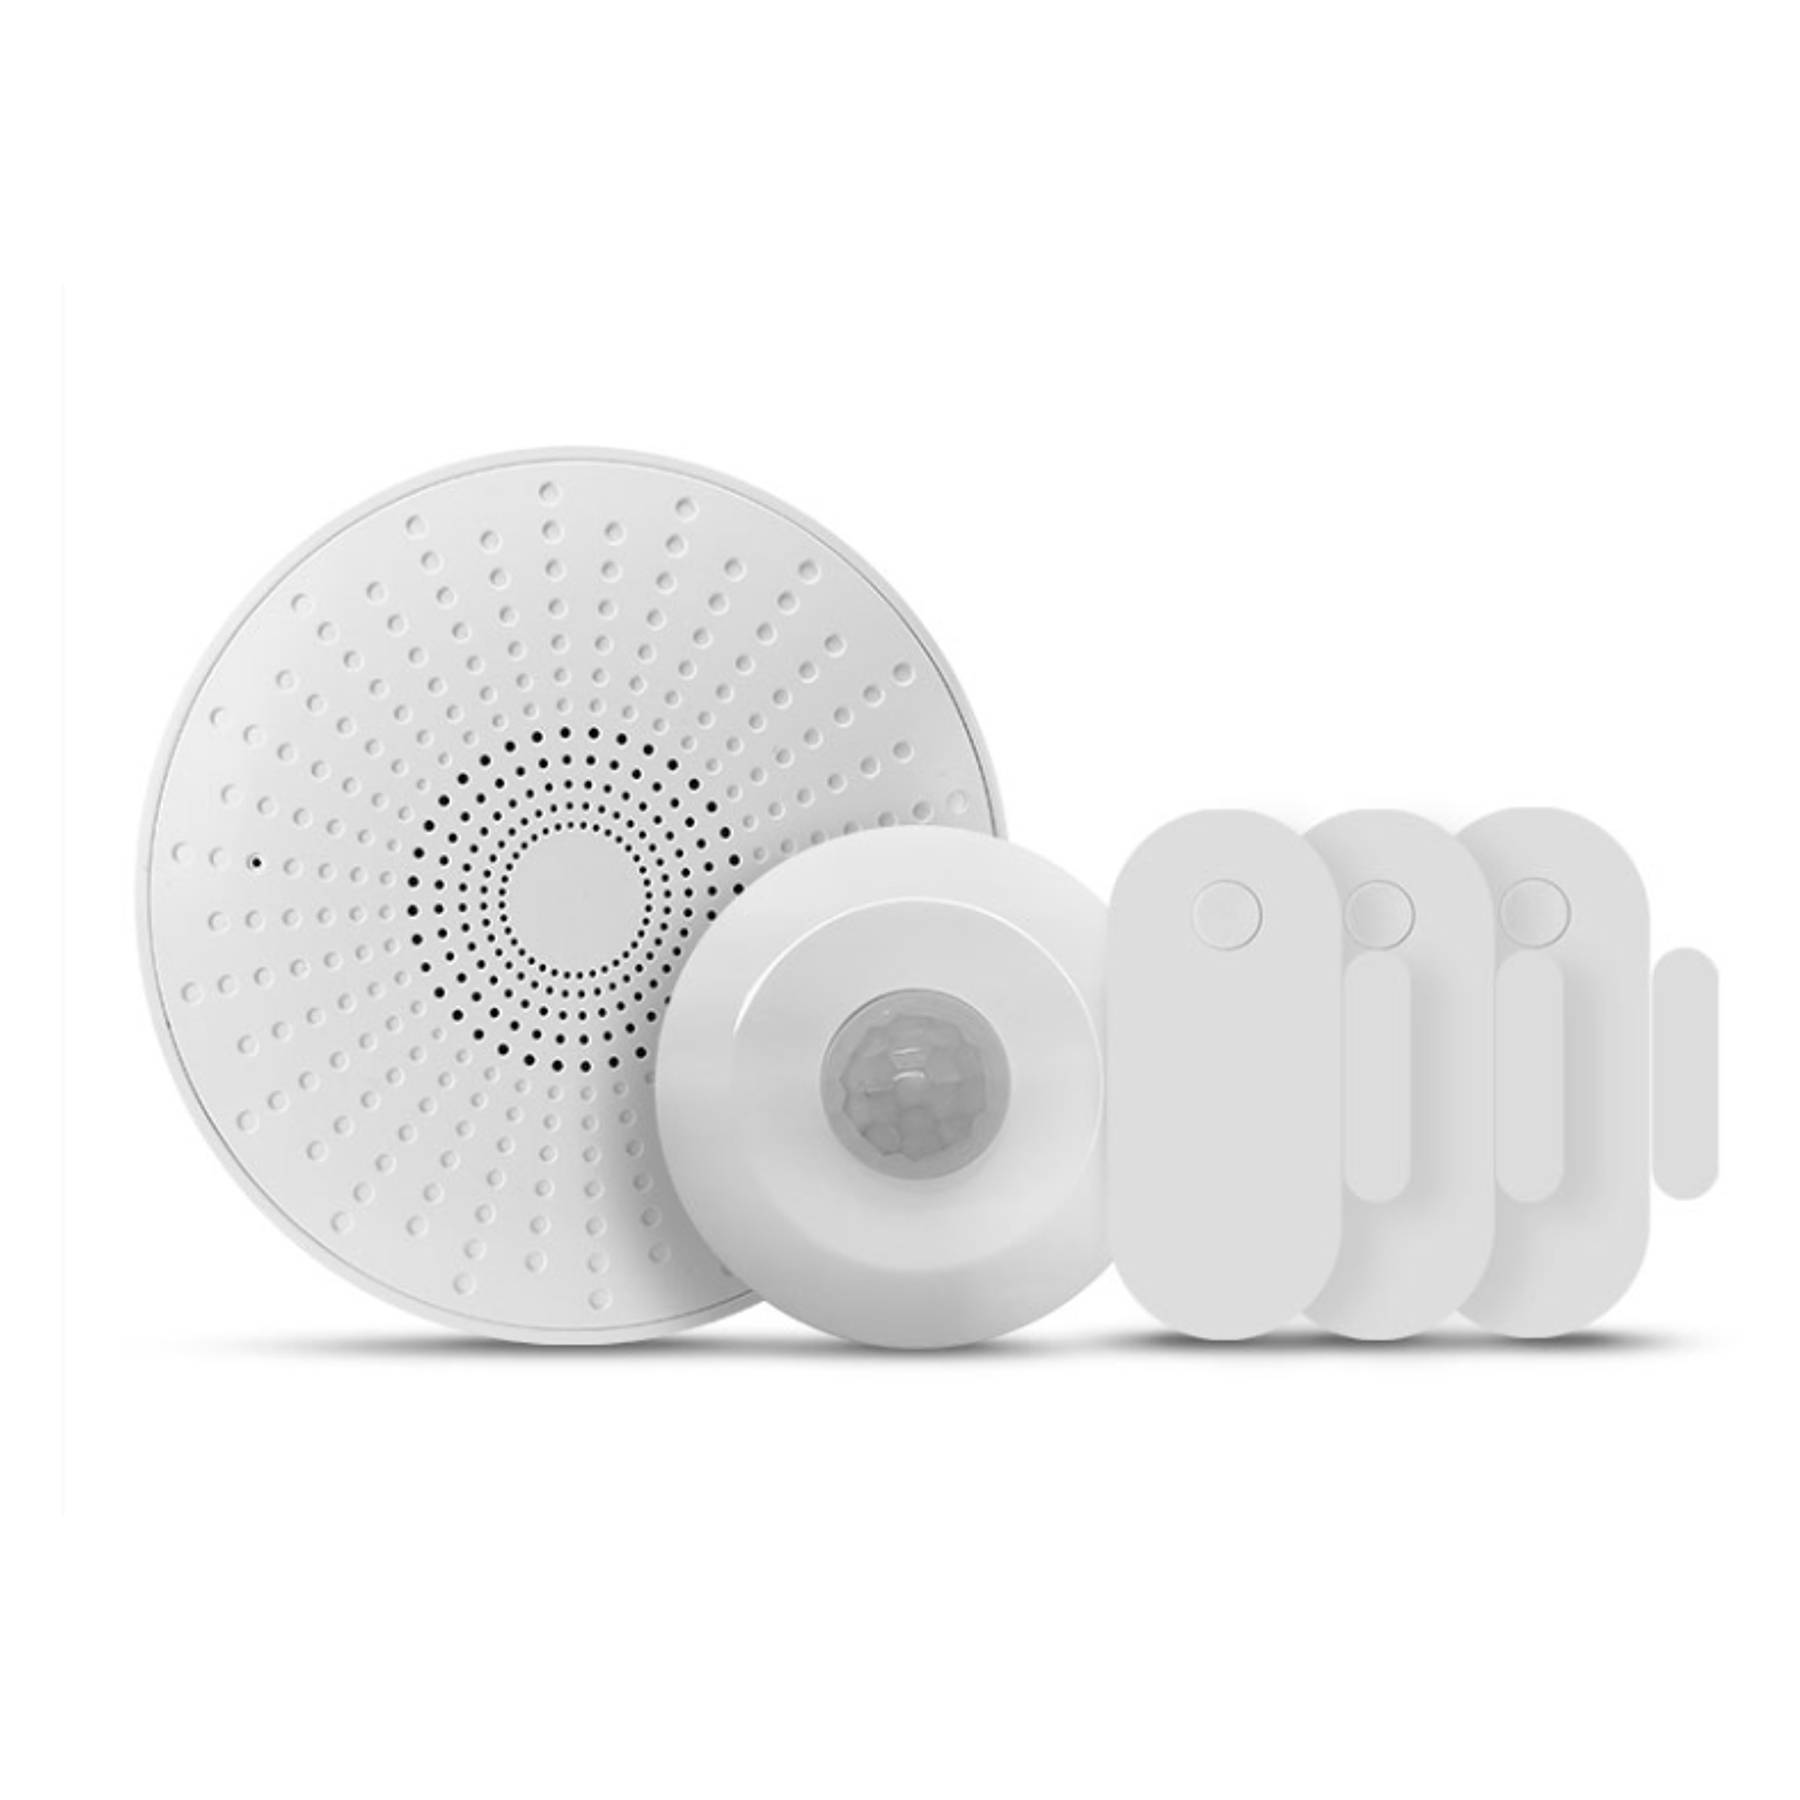 Nexxt Home Kit de alarma  inteligente  sirena /2 sensores apertura / 1 sensor de movimiento 